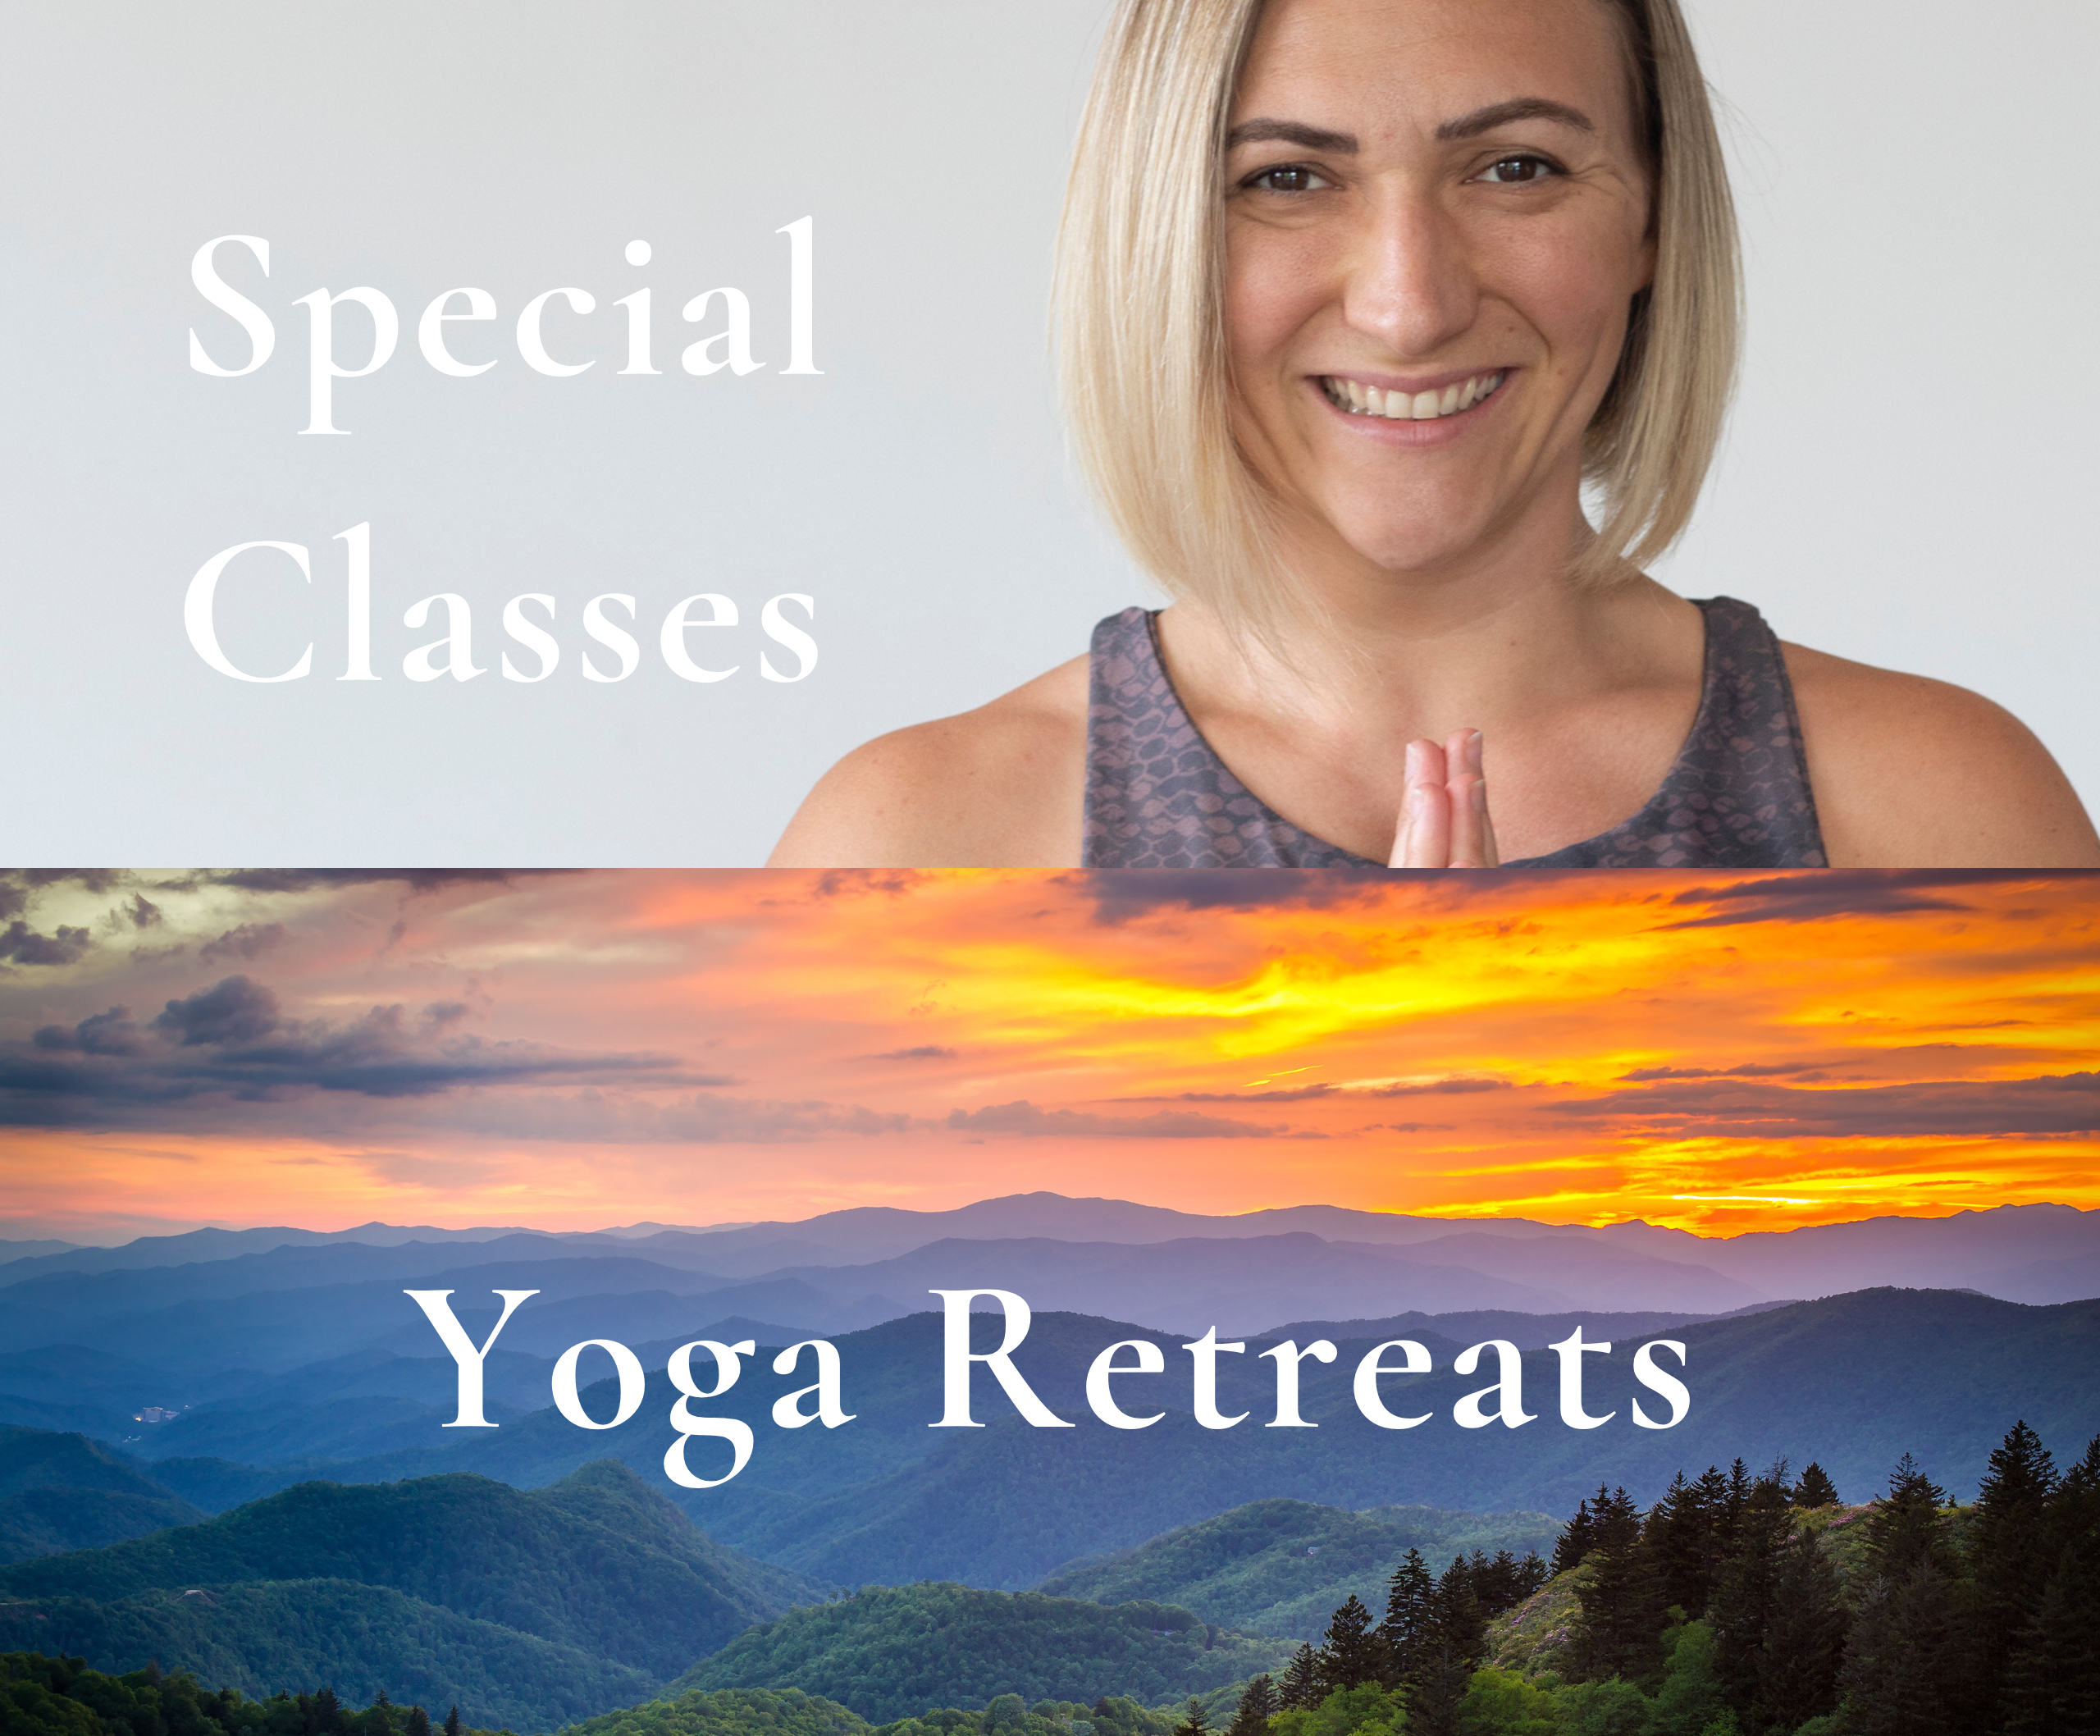 Special Classes and Yoga Retreats at Sol Yoga